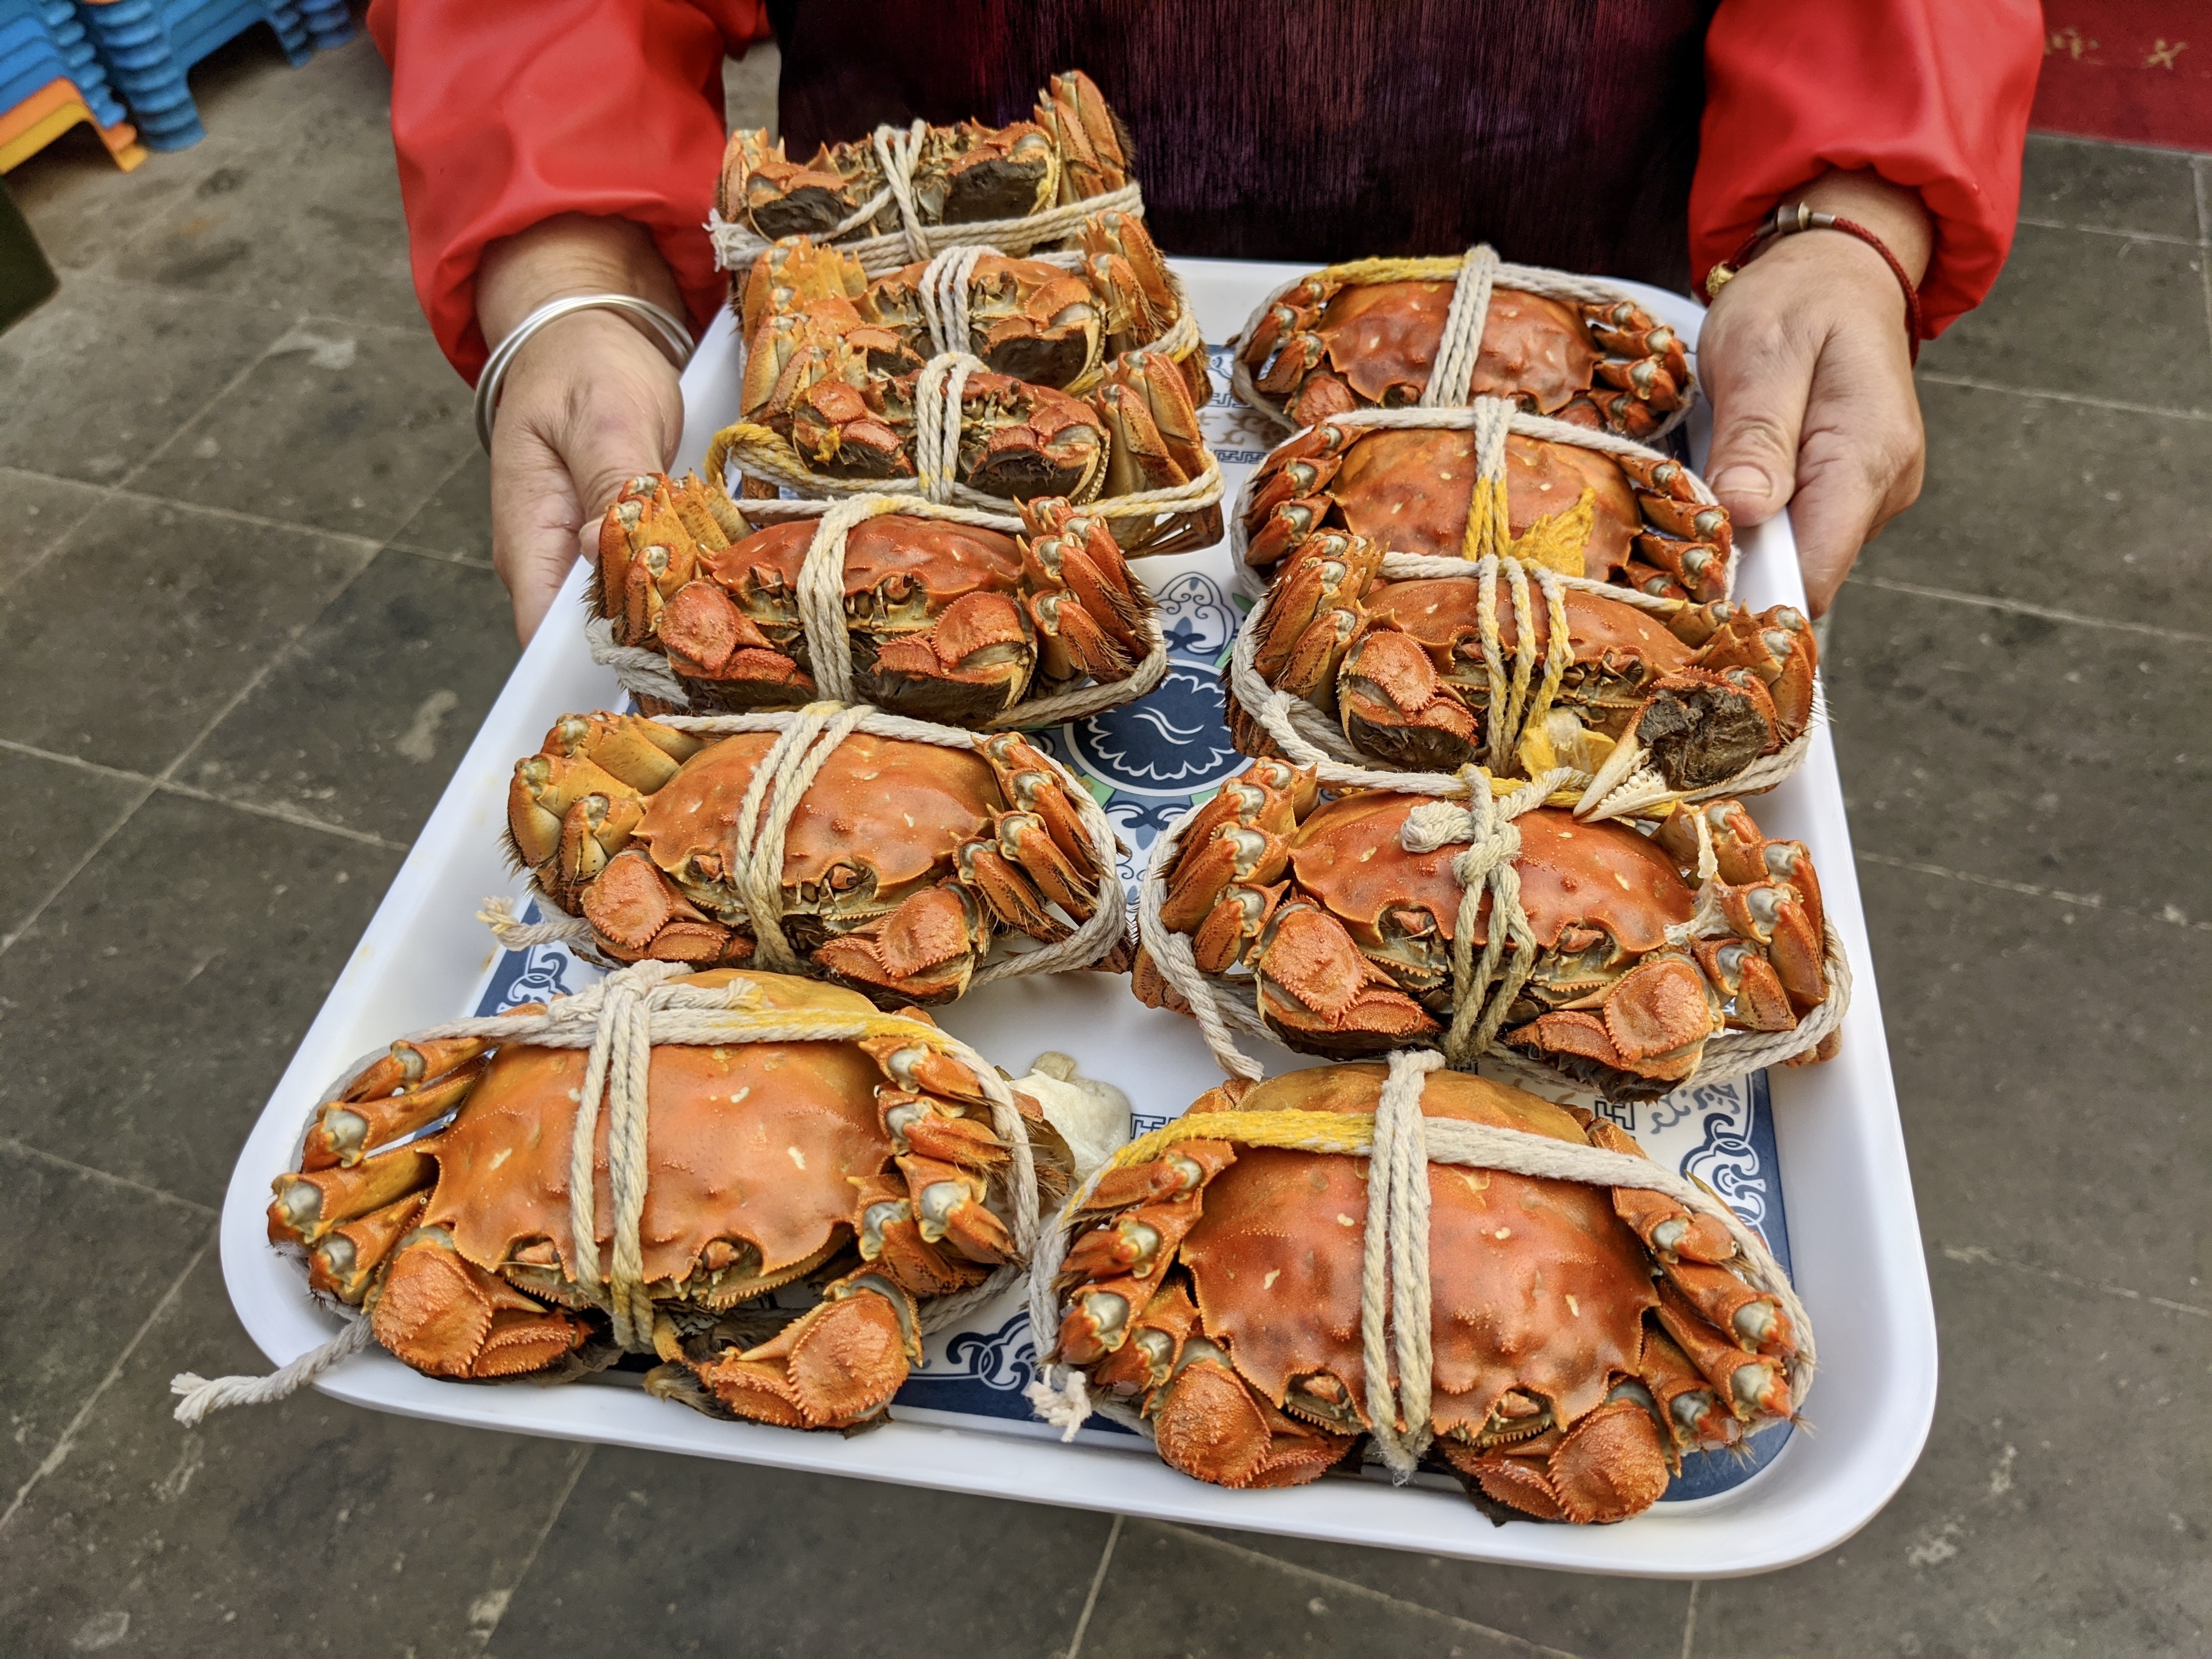 今が旬の 上海蟹 を食べに中国へ 一流シェフが即興で上海蟹料理を披露する贅沢な宴に T E R I Y A K I